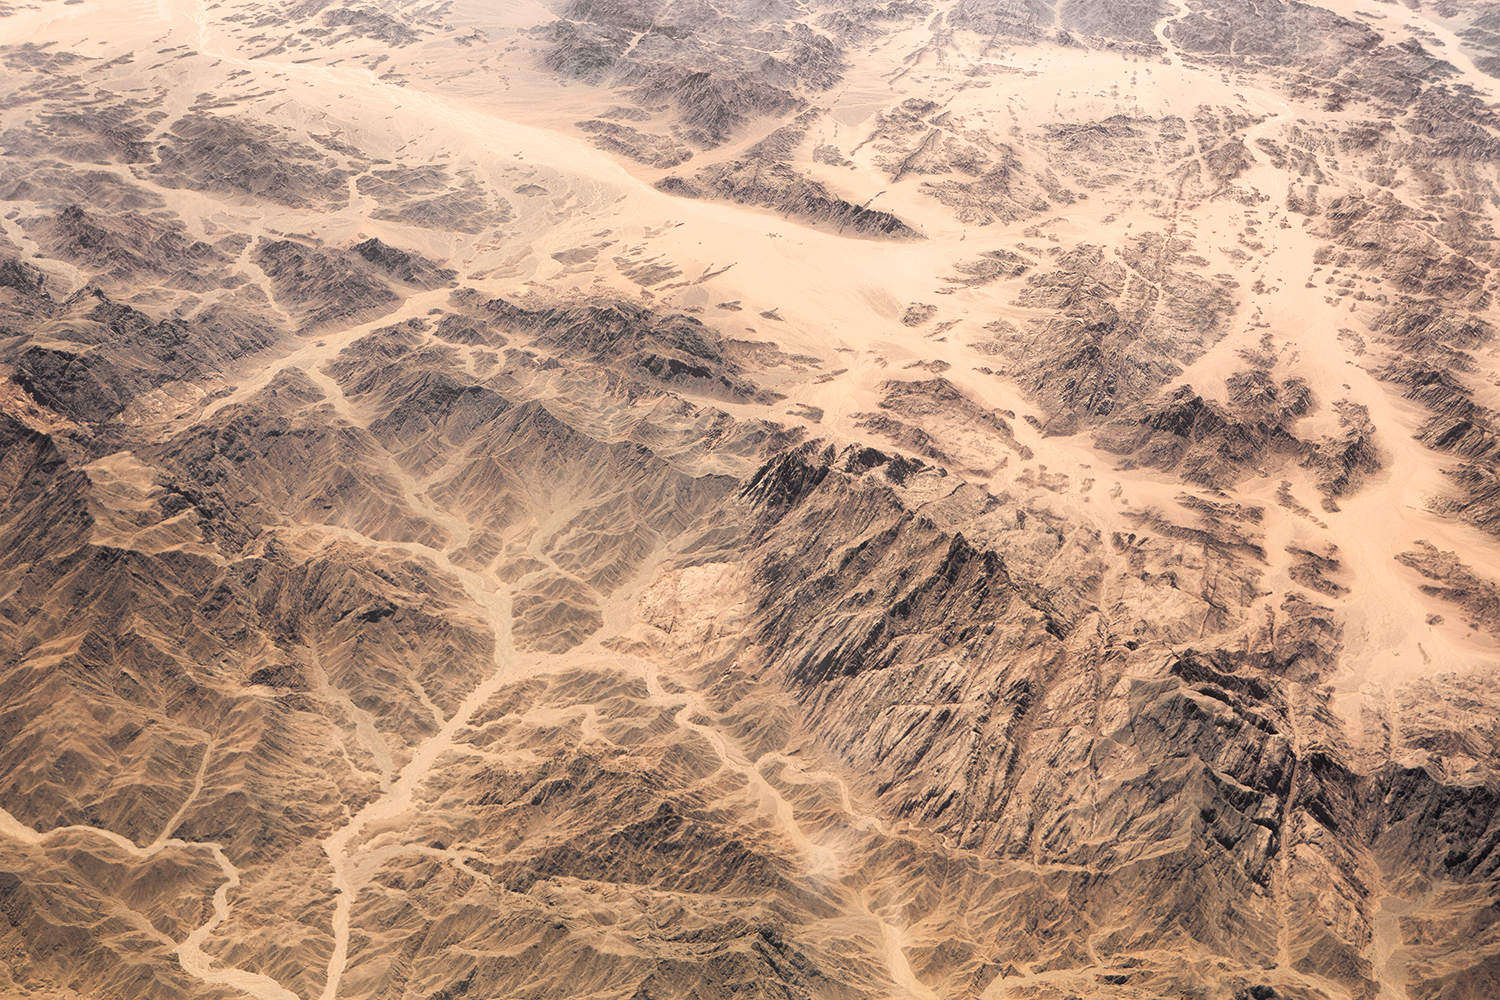  Deserts - Survey #5, 2015 //  80 cm x 120 cm  